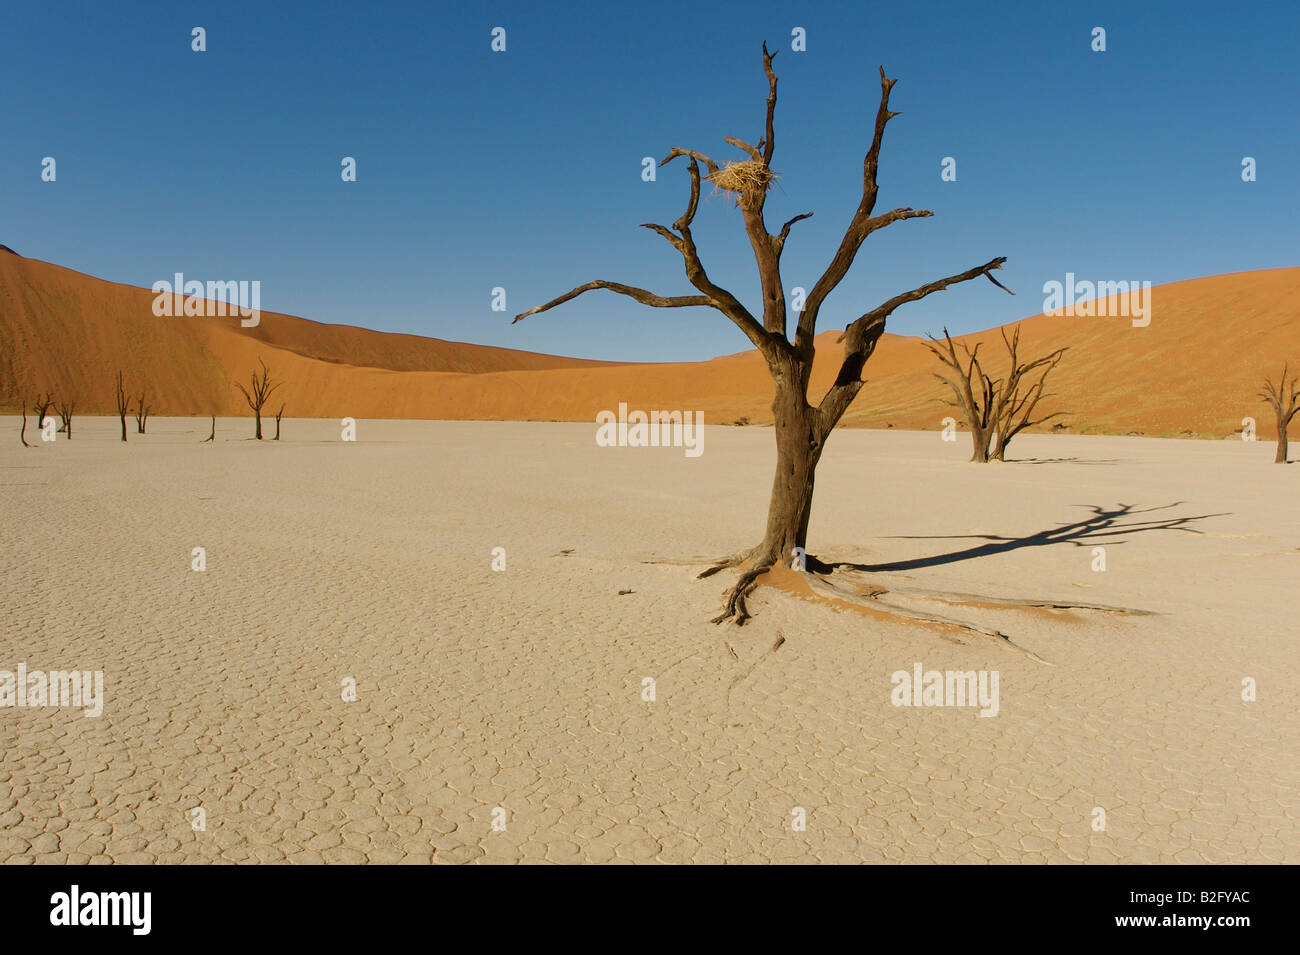 Dead vlei namibie arbre Banque D'Images